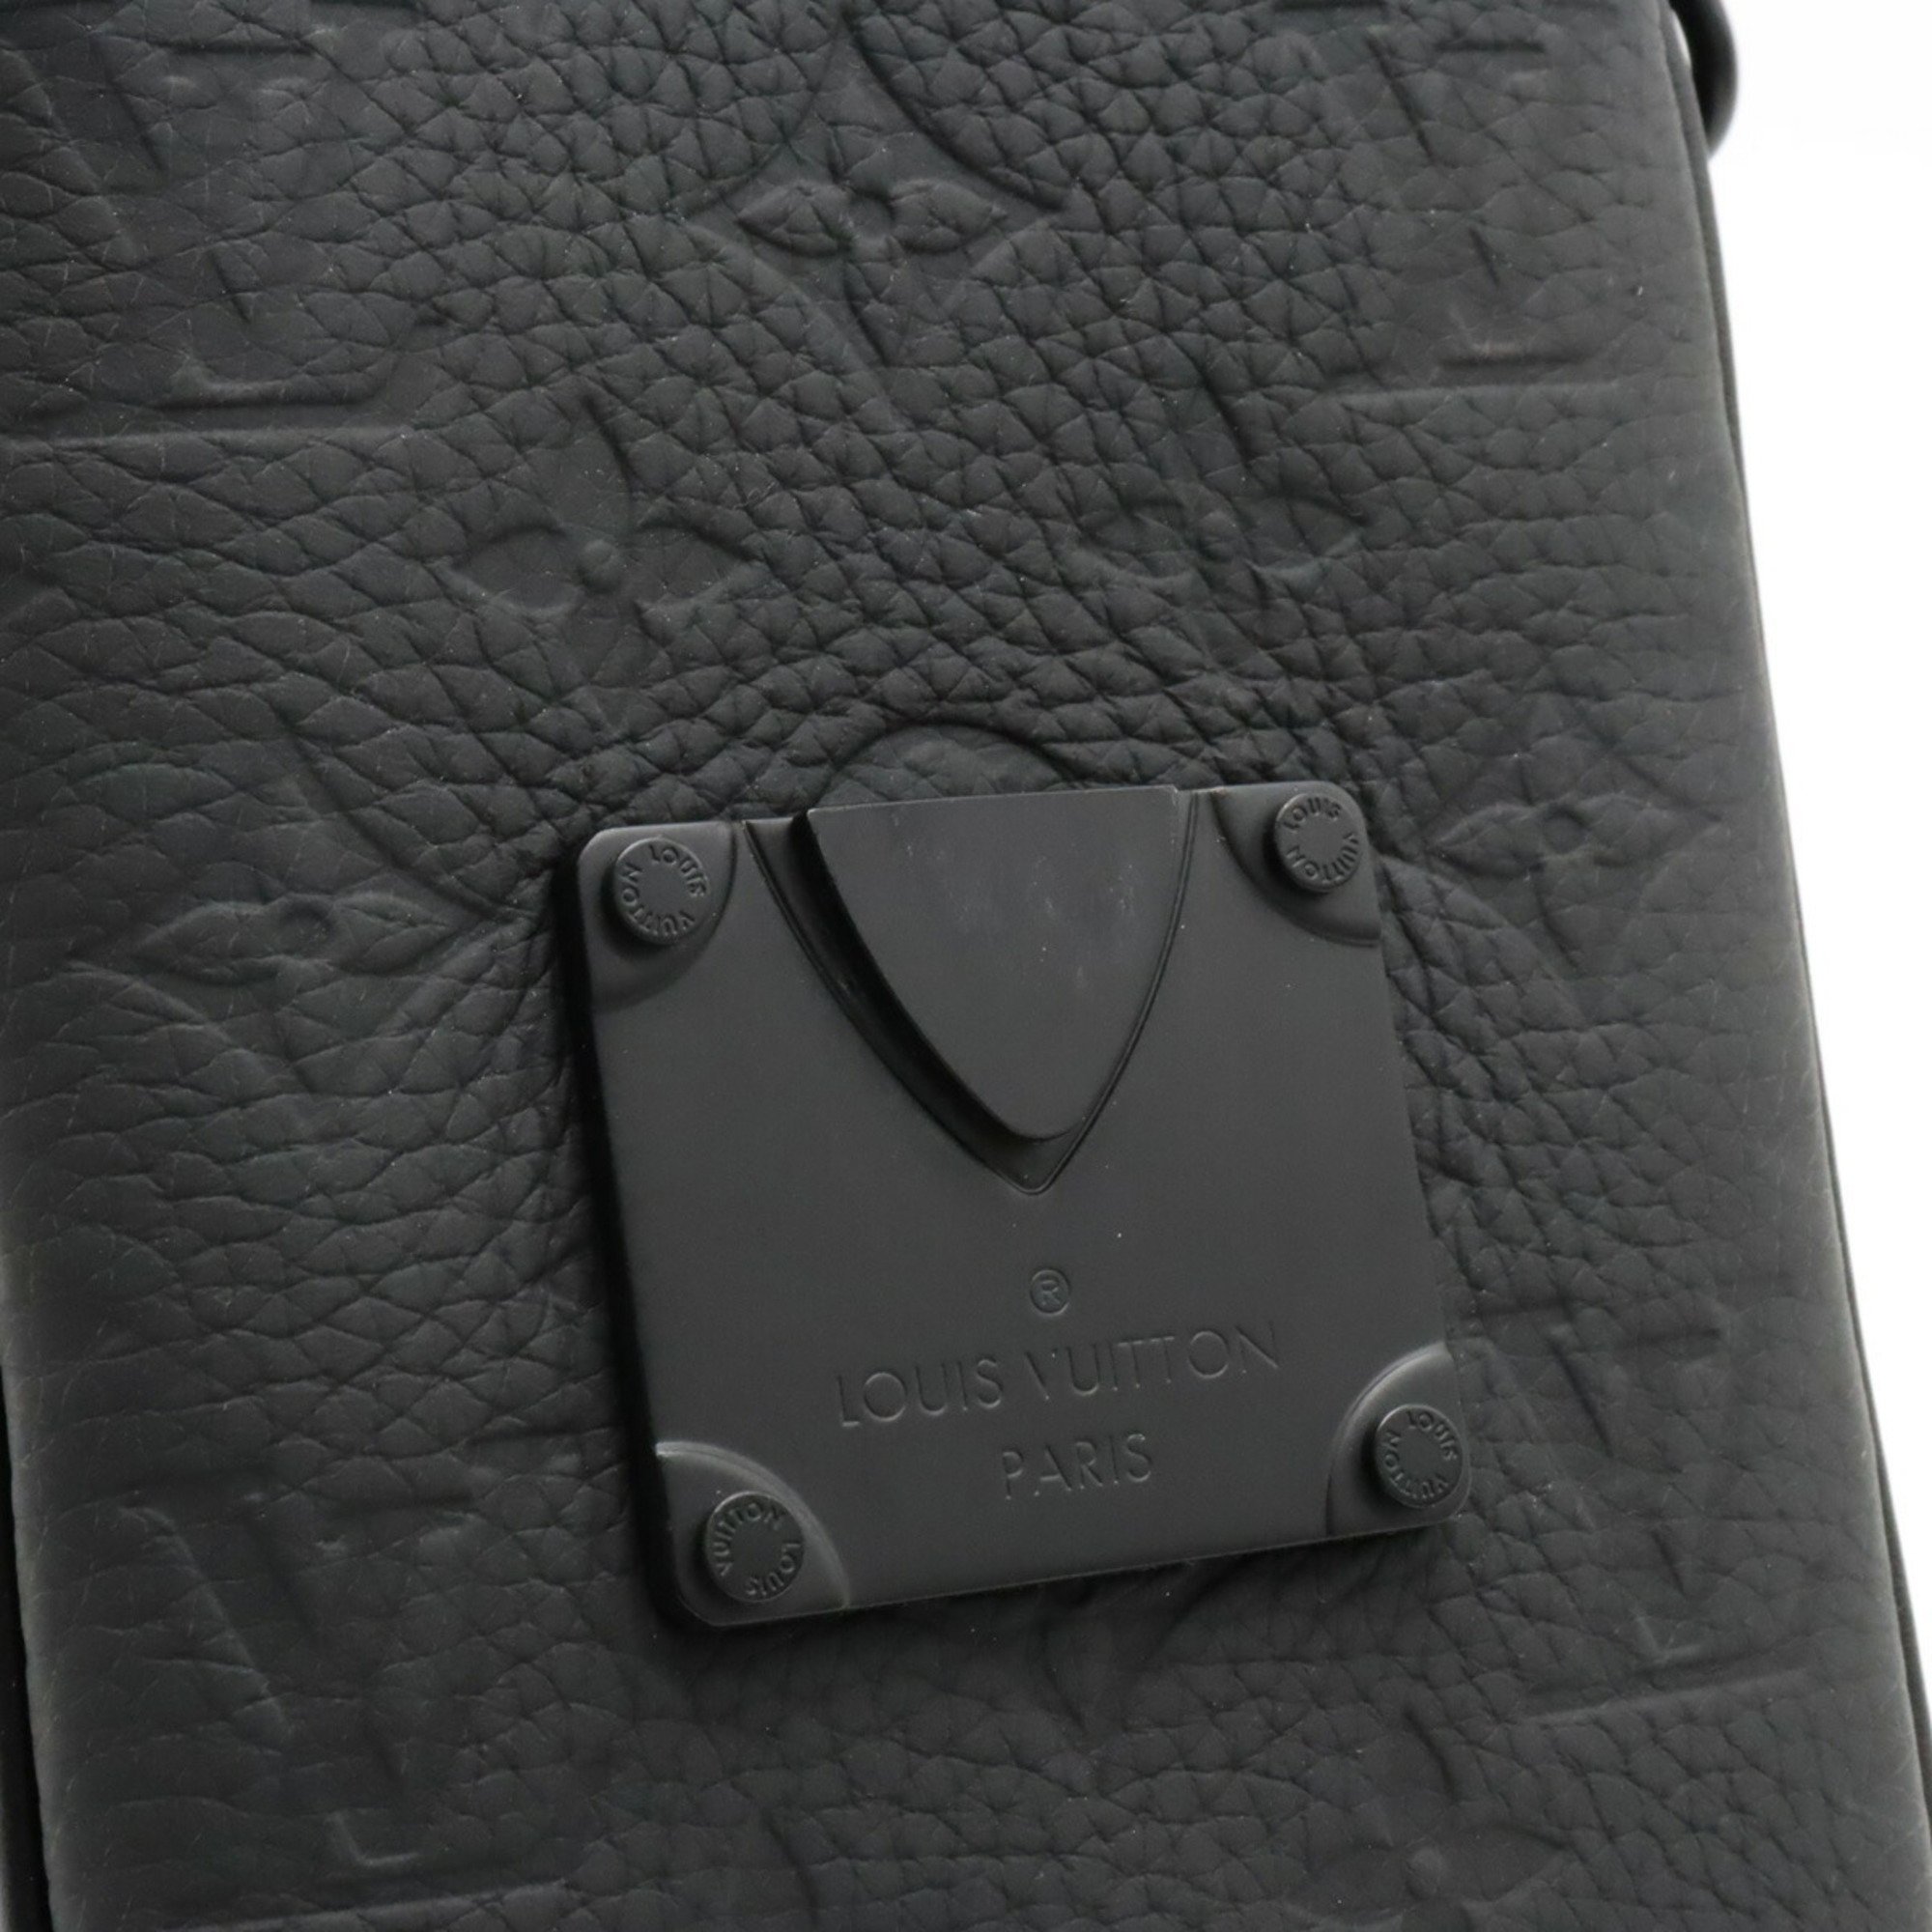 LOUIS VUITTON Monogram Taurillon S Rock Vertical Wearable Wallet Shoulder Bag Noir Black M81524